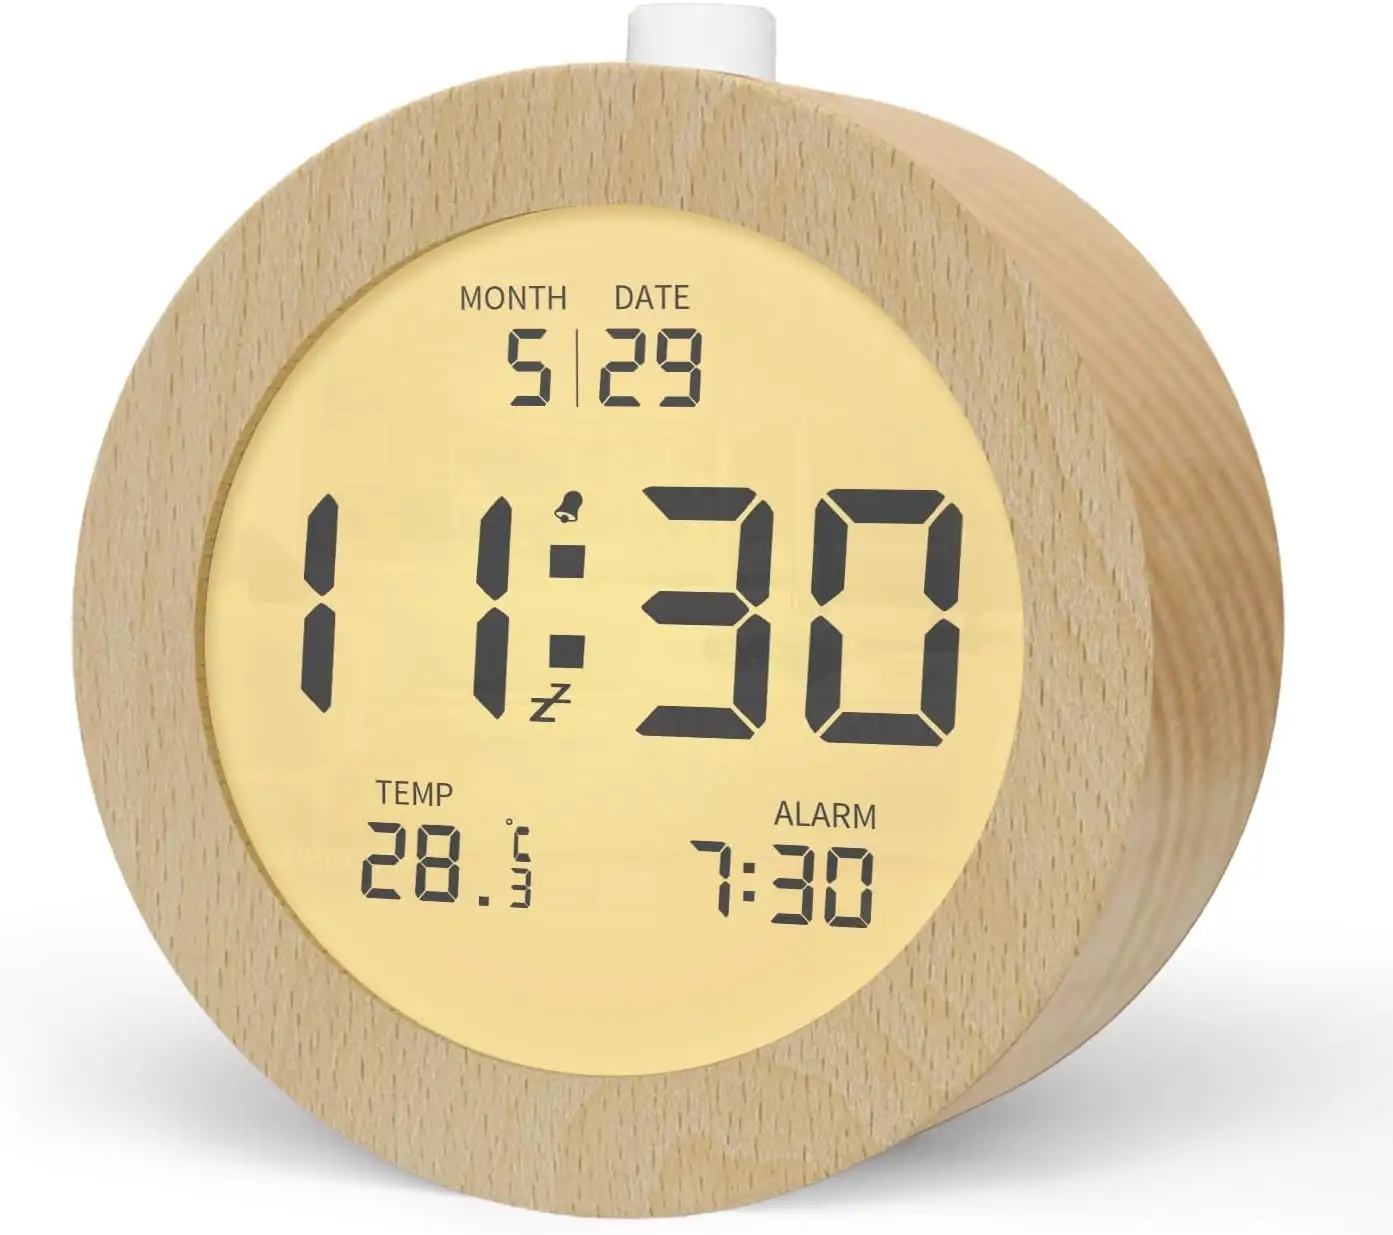 Alarme de mesa digital LCD com quadro de bambu real grande display, mesa de trabalho, tempo, temperatura, data, despertador